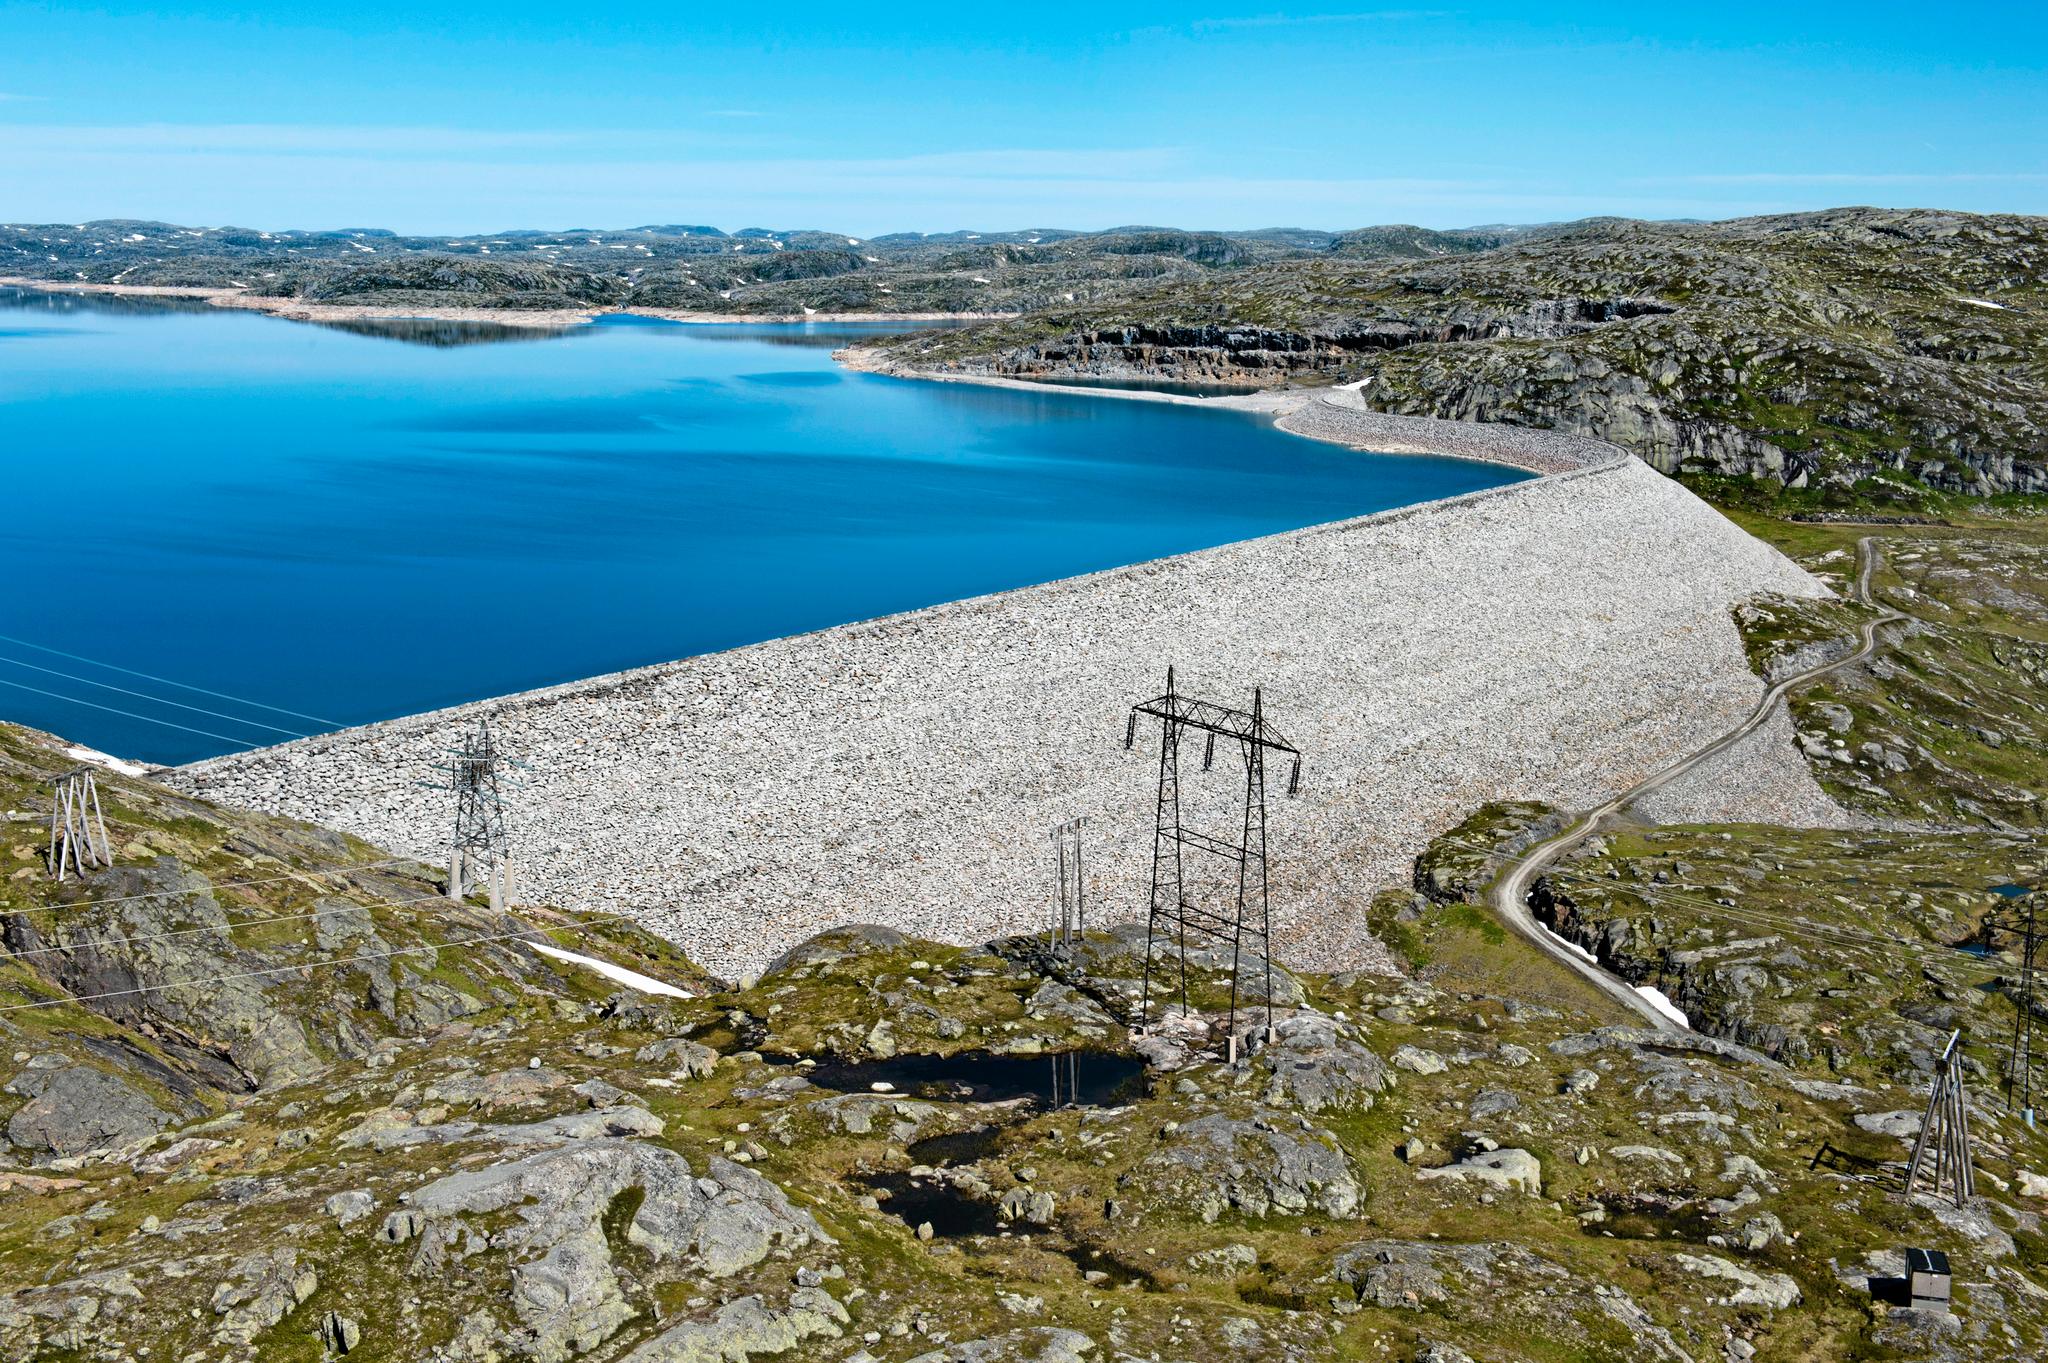 Norge har høy leveringssikkerhet fordi vi har vannmagasiner som gjør at vi kan produsere strøm en kald vinterdag uavhengig av om det blåser eller ikke. Her fra Blåsjø, et av Norges største vannmagasiner. 